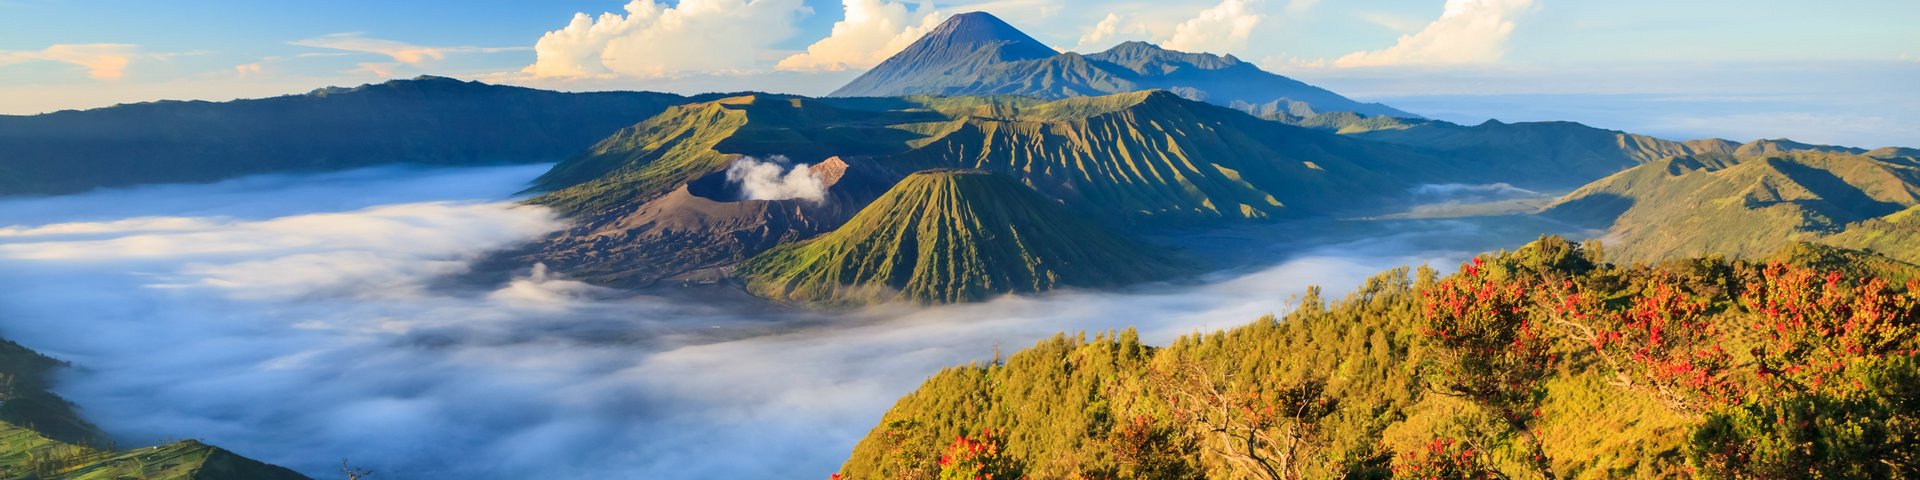 Blick auf den Vulkan Bromo auf der Insel Java